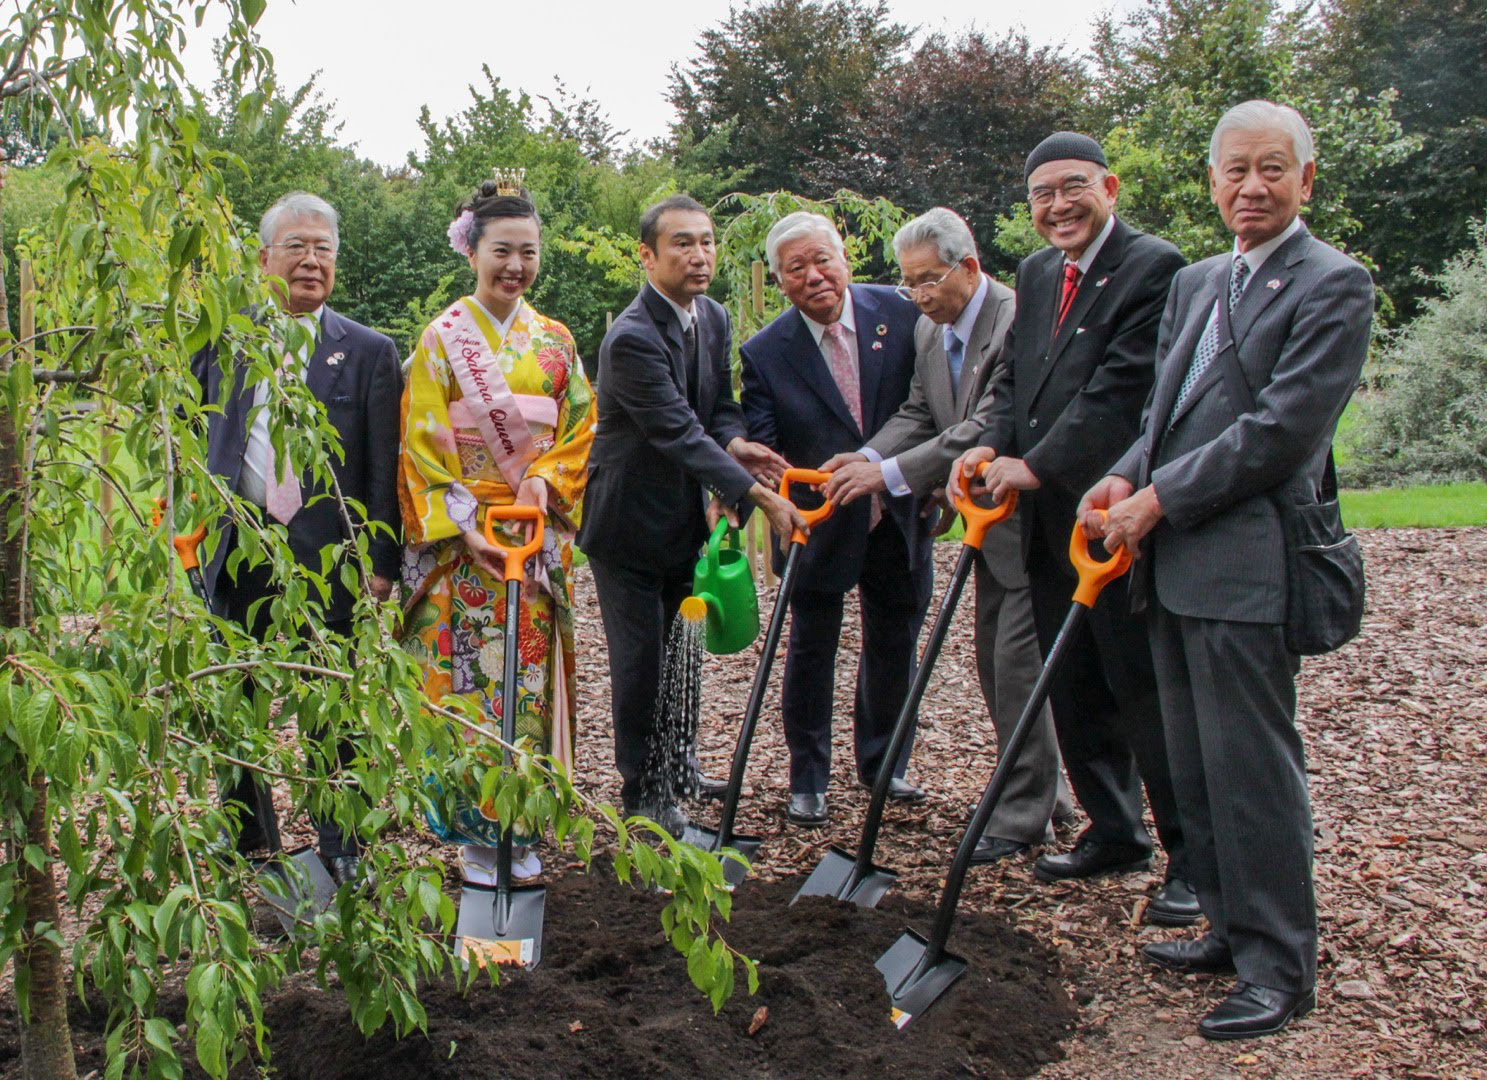 Sześciu mężczyzn ze stowarzyszenia japońskiego stoi, podpierając się o szpadle w towarzystwie Japonki w kimonie – wcześniej zasadzili drzewko wiśni piłkowanej na terenie kolekcji sakur 